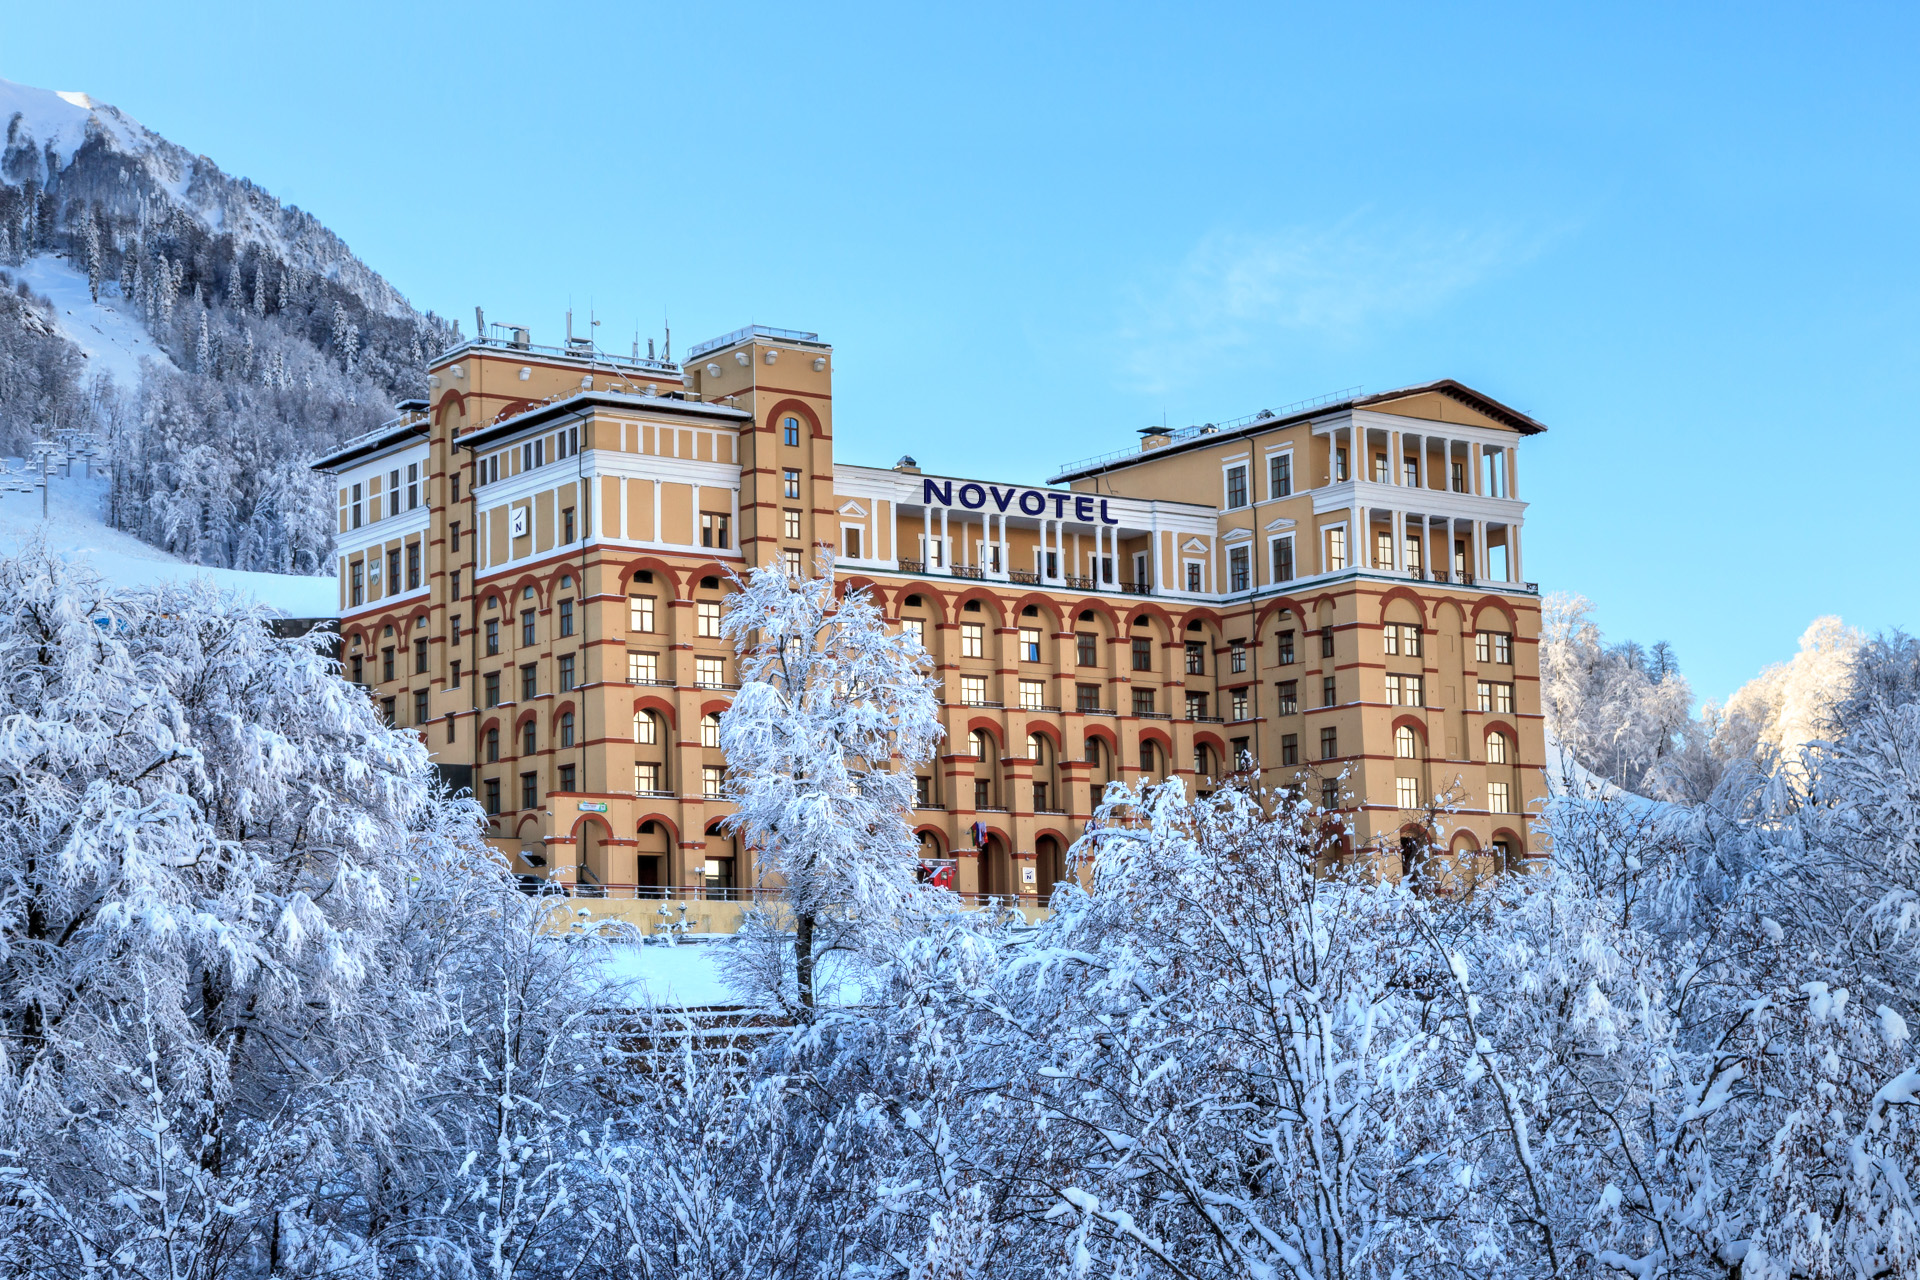 Более 160 классифицированных отелей горного кластера Сочи готовы к открытию сезона